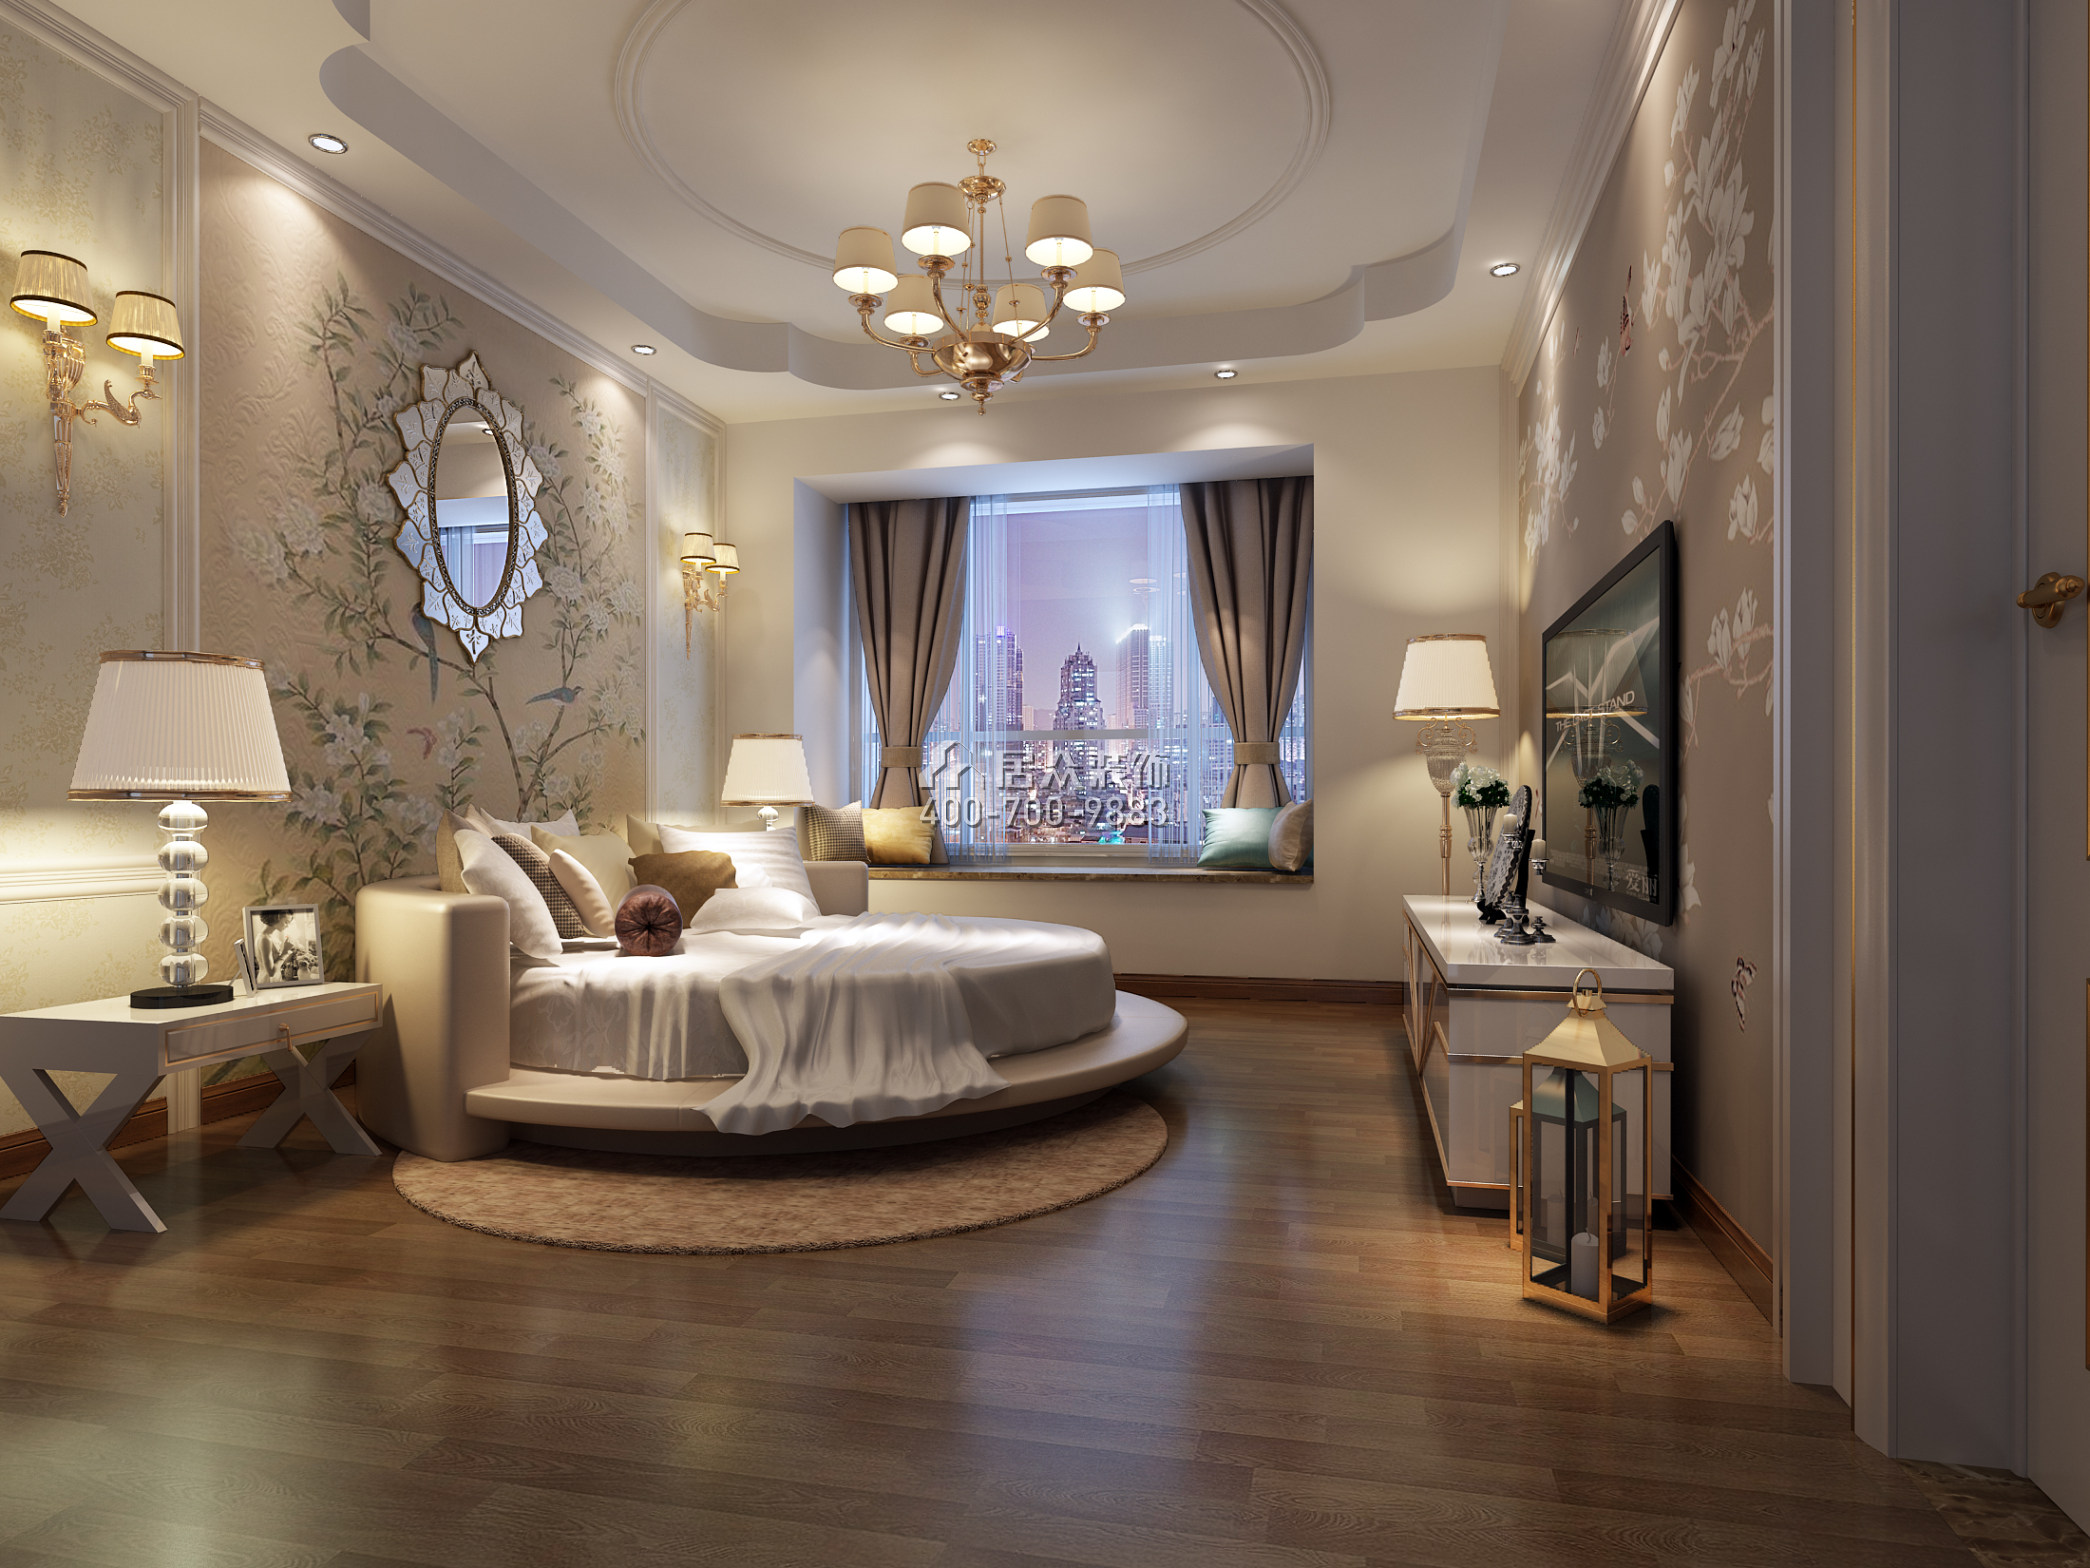 招商卡達凱斯140平方米歐式風格平層戶型臥室裝修效果圖